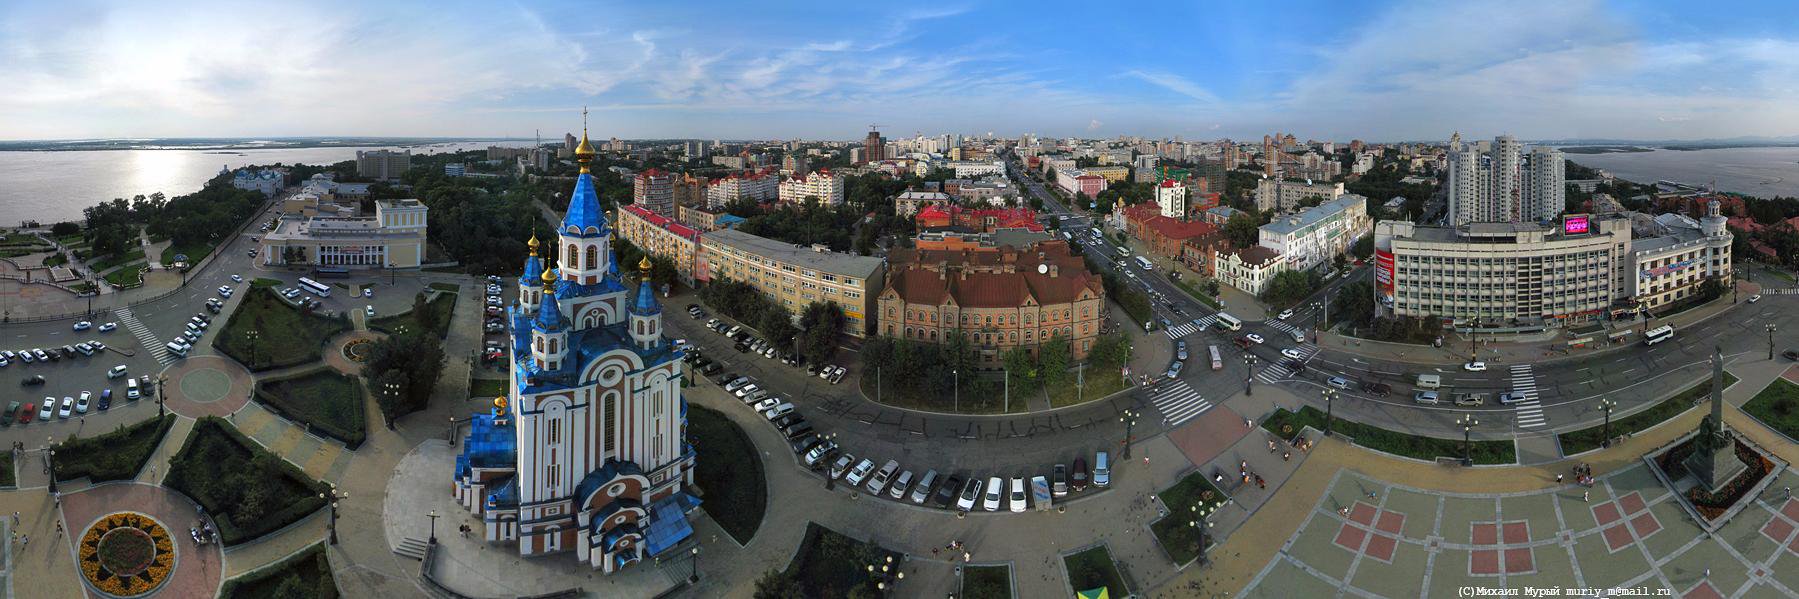 Изображние города Хабаровск